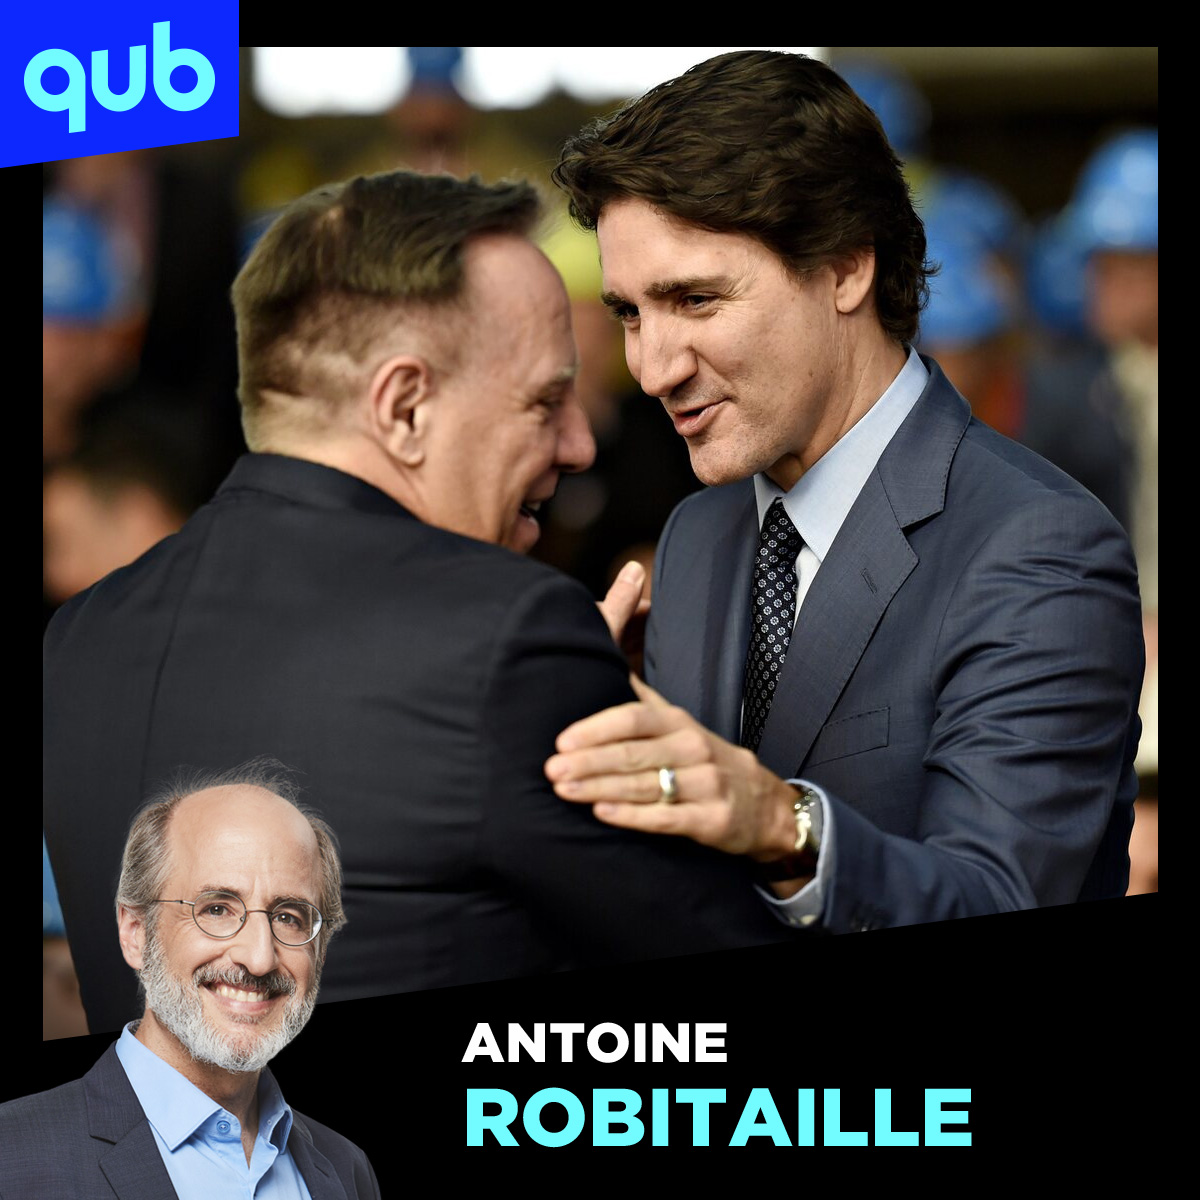 Semaine périlleuse à venir pour Legault: budget, rencontre avec Trudeau